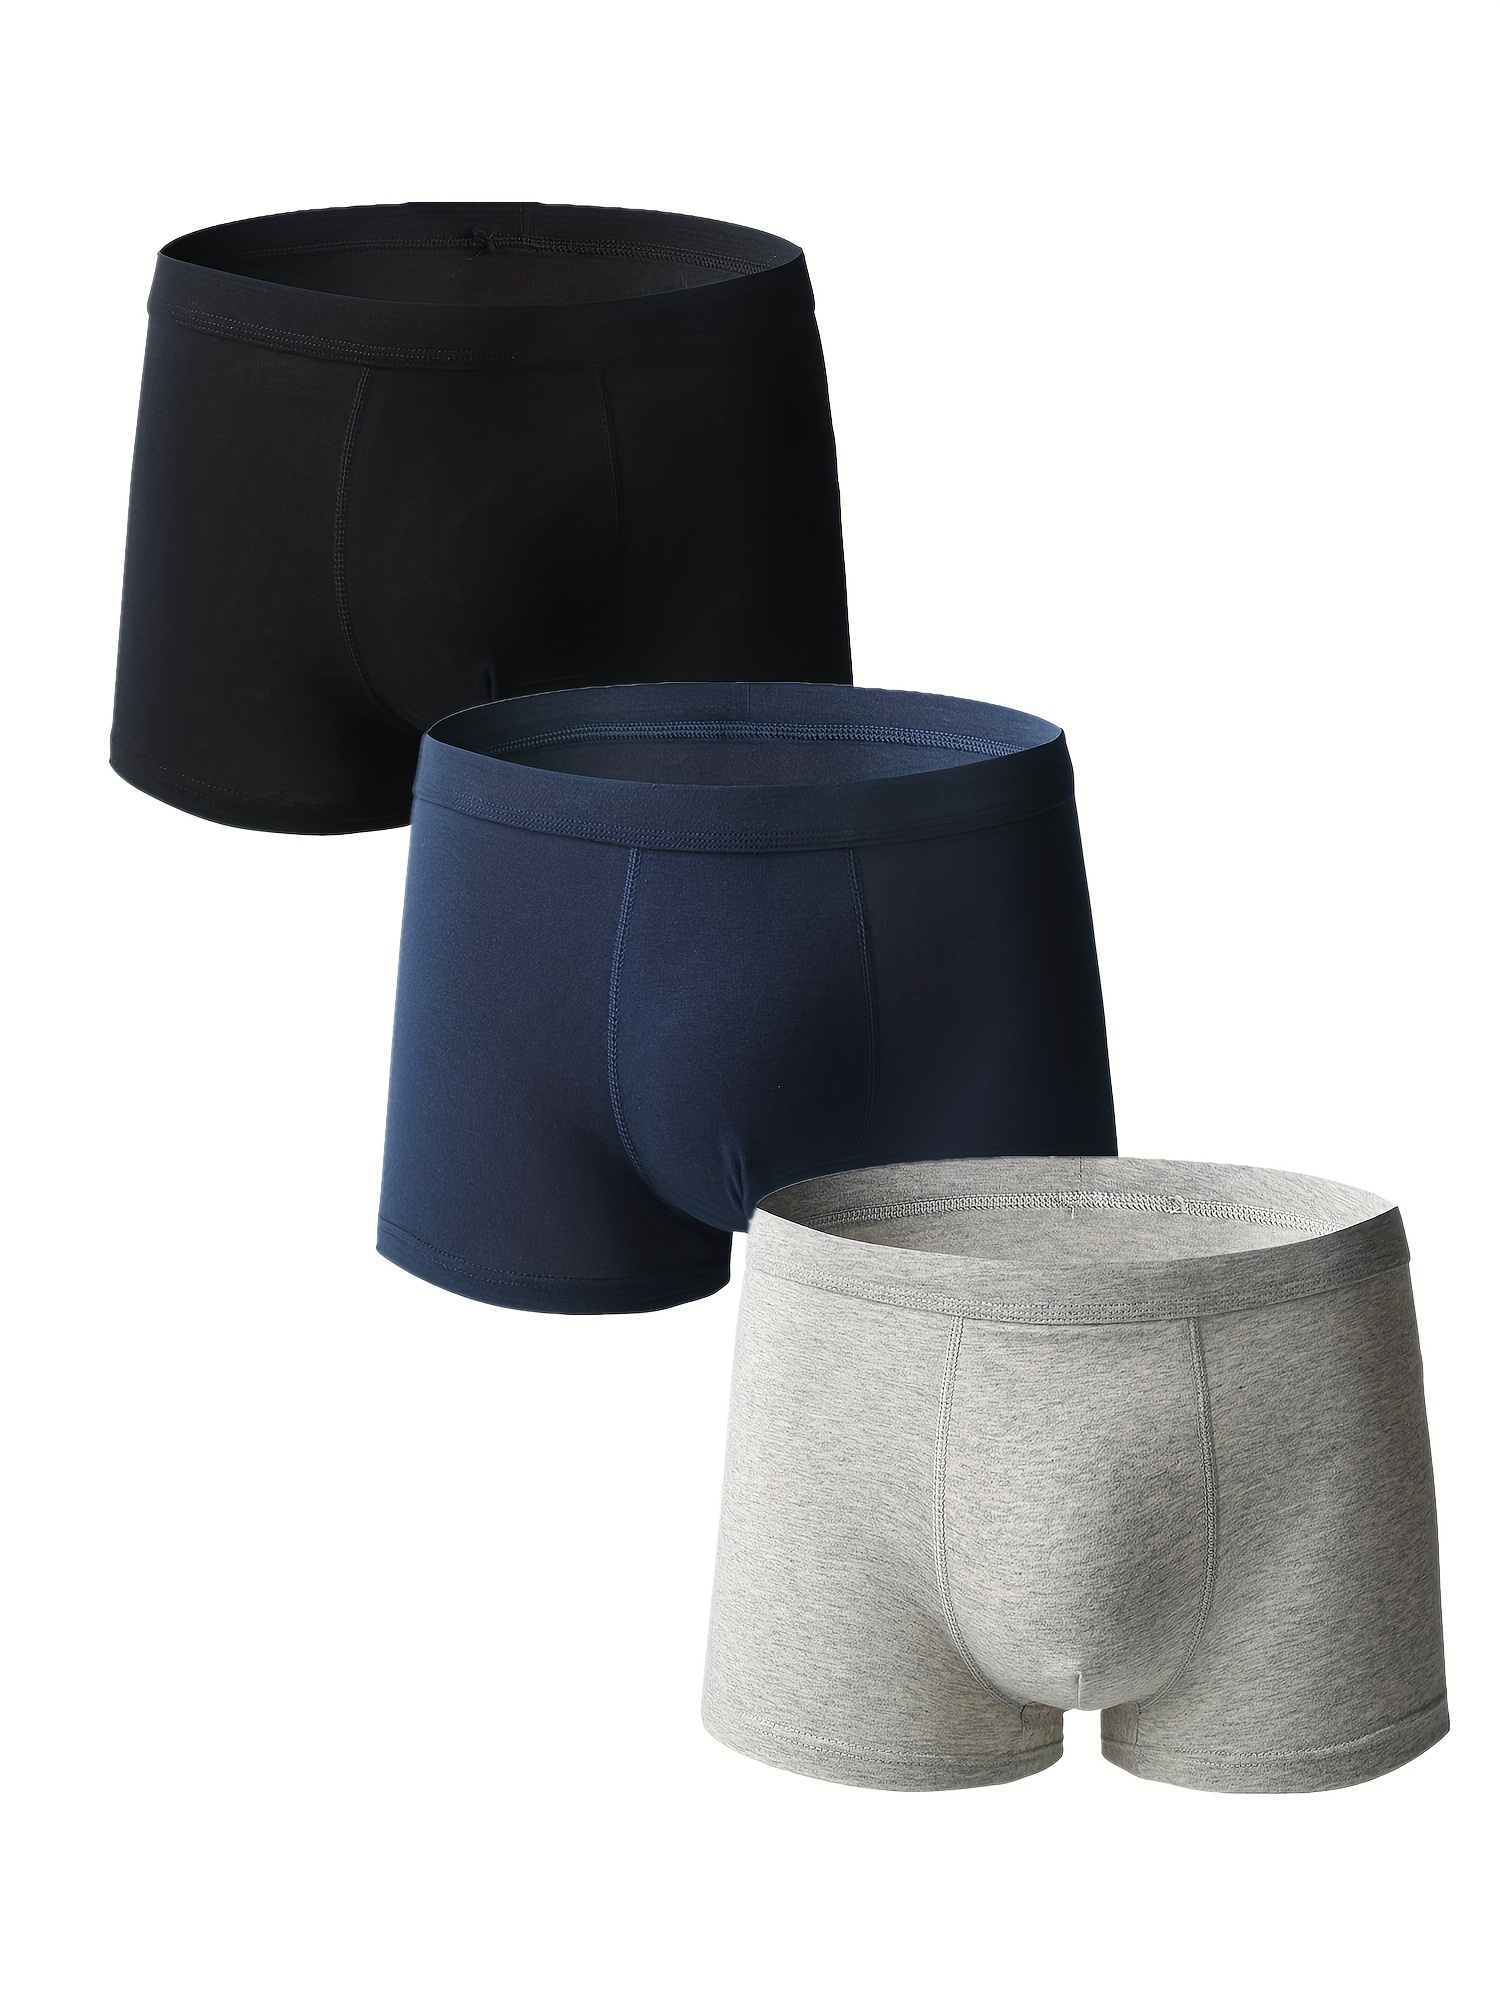 Men's Plain Color Soft Comfortable Breathable Boxer Briefs - Temu